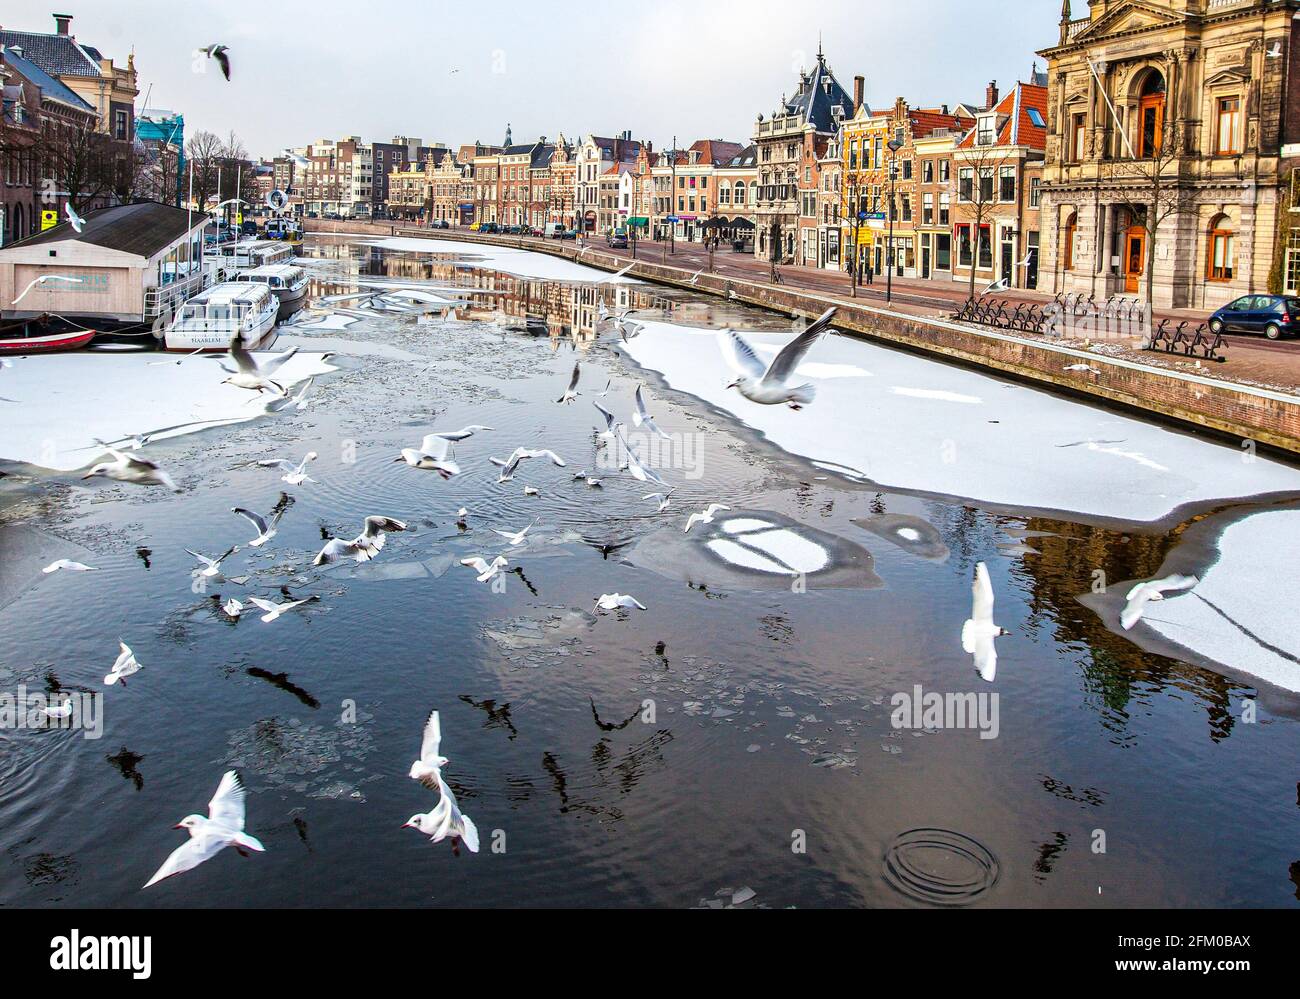 Des mouettes volantes sur le canal Spaarne avec des maisons traditionnelles au bord de la rivière, Haarlem, Amsterdam, Hollande-Nord, pays-Bas Banque D'Images